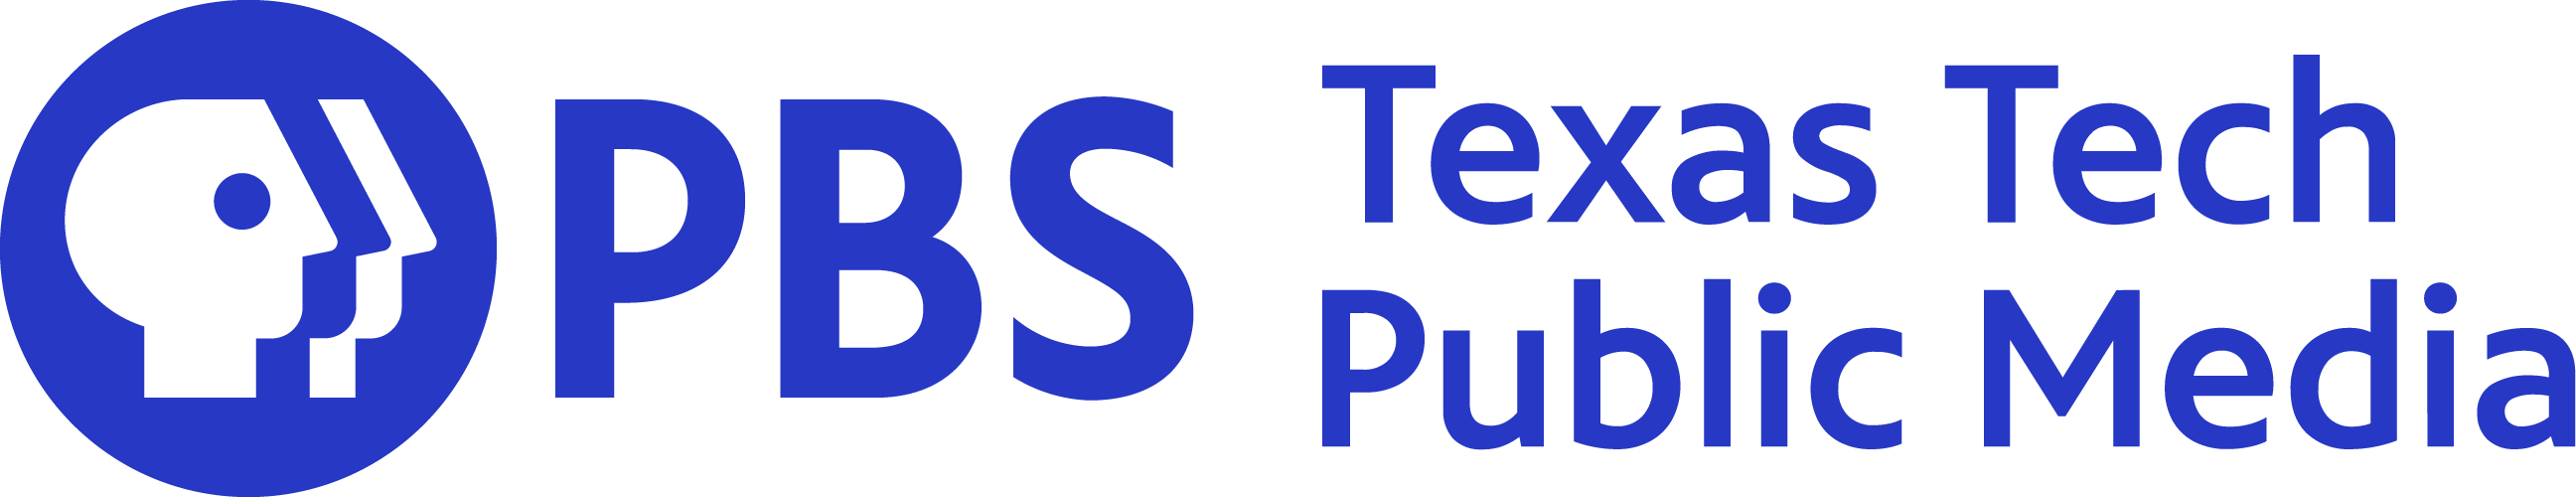 PBS Texas Tech Public Media